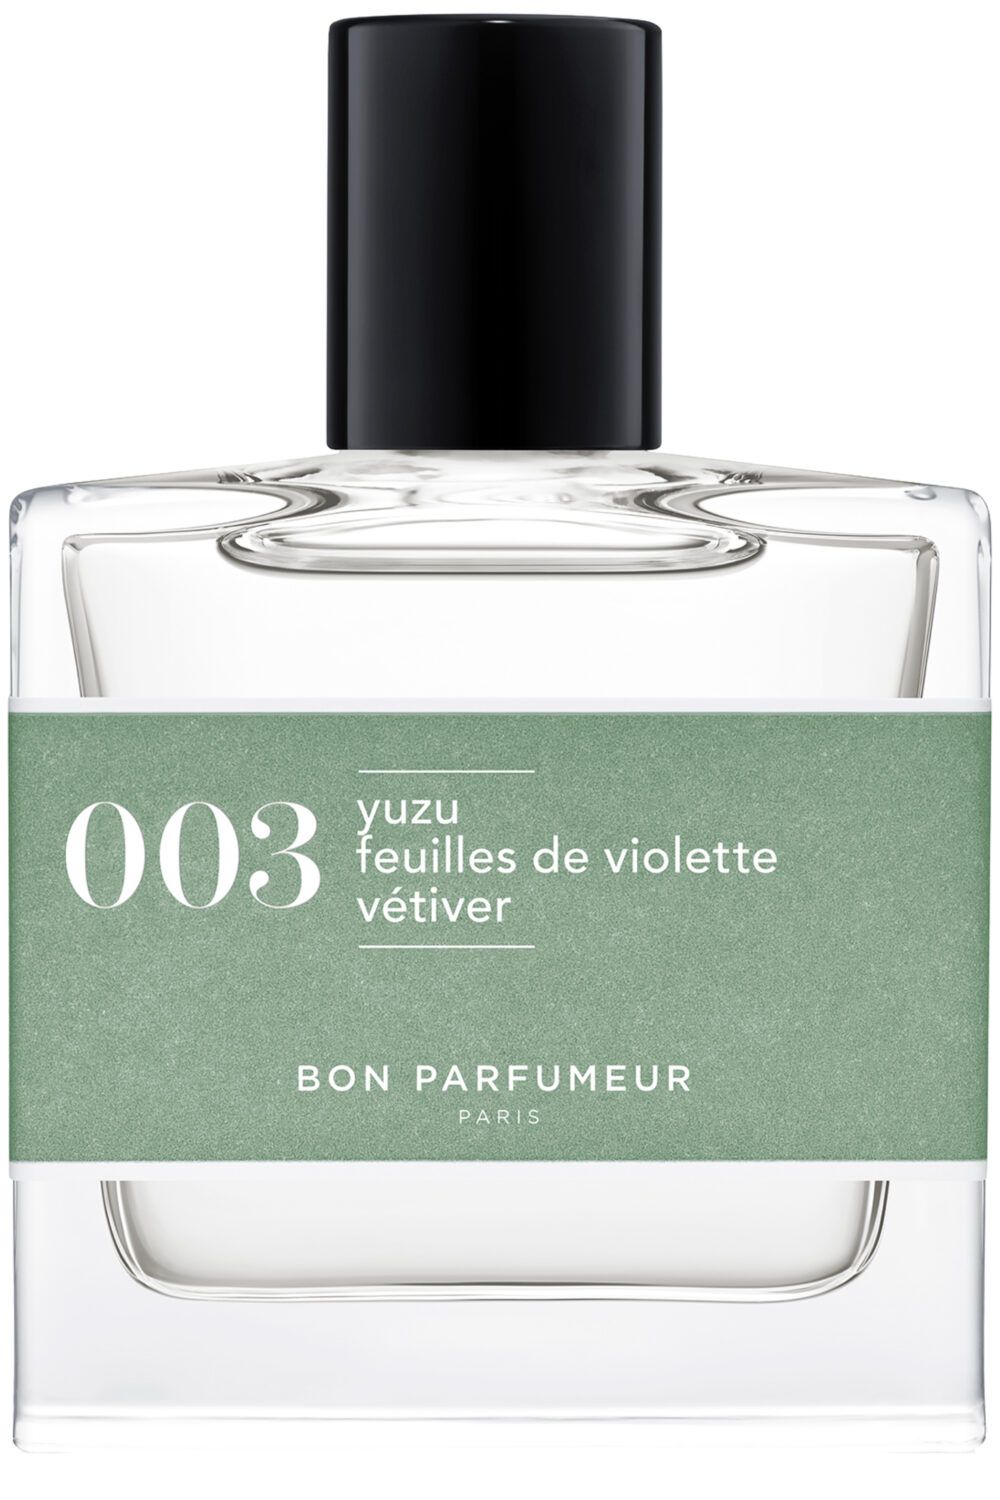 Bon Parfumeur Paris - 003 Yuzu feuille de violette vétiver Eau de Cologne 30mL